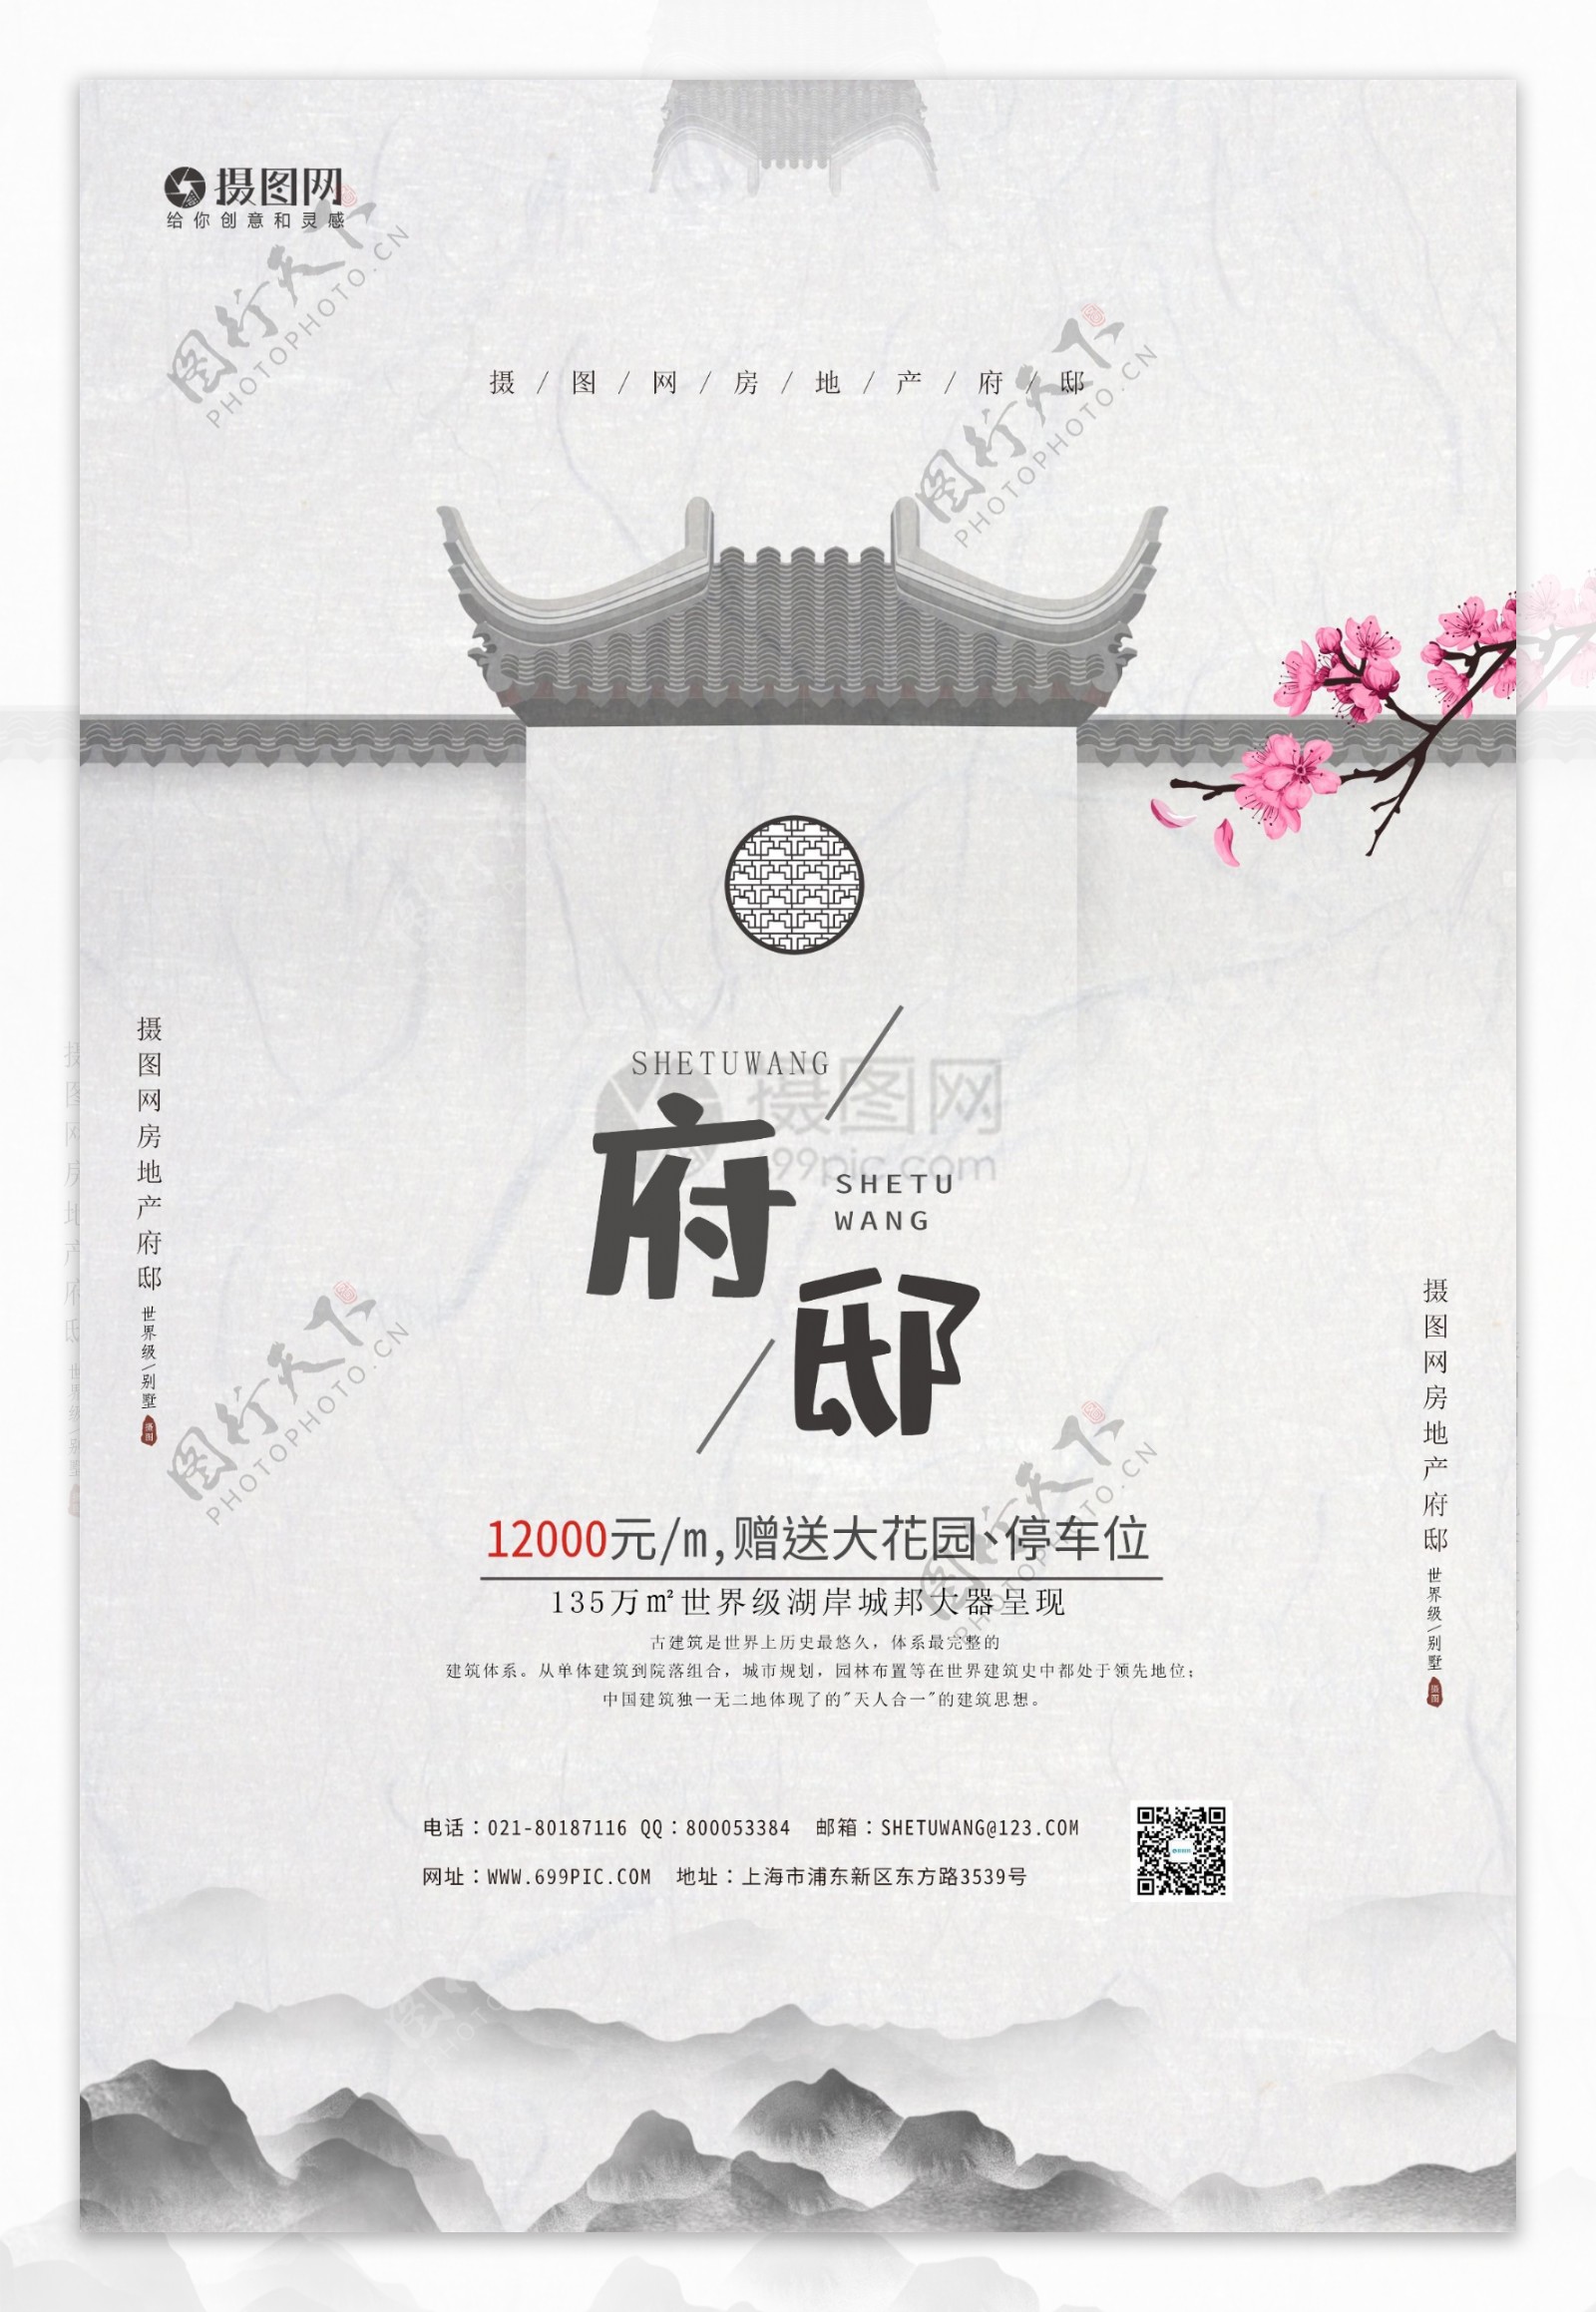 中国风水墨府邸地产宣传海报